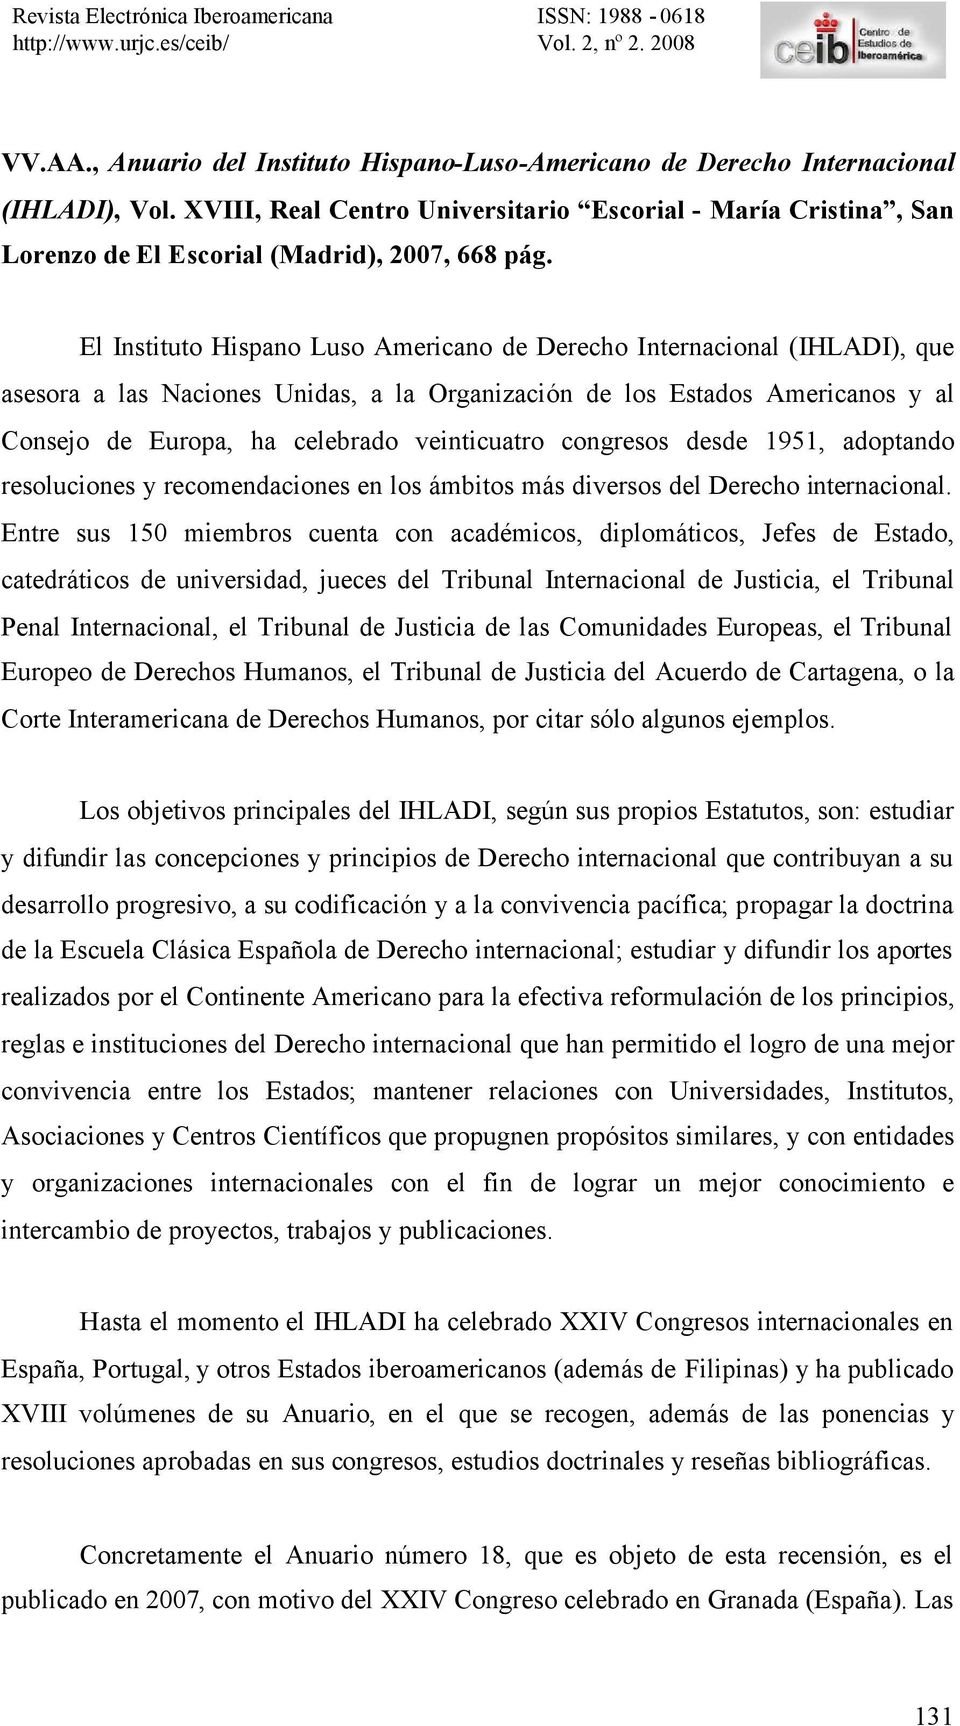 El Instituto Hispano Luso Americano de Derecho Internacional (IHLADI), que asesora a las Naciones Unidas, a la Organización de los Estados Americanos y al Consejo de Europa, ha celebrado veinticuatro